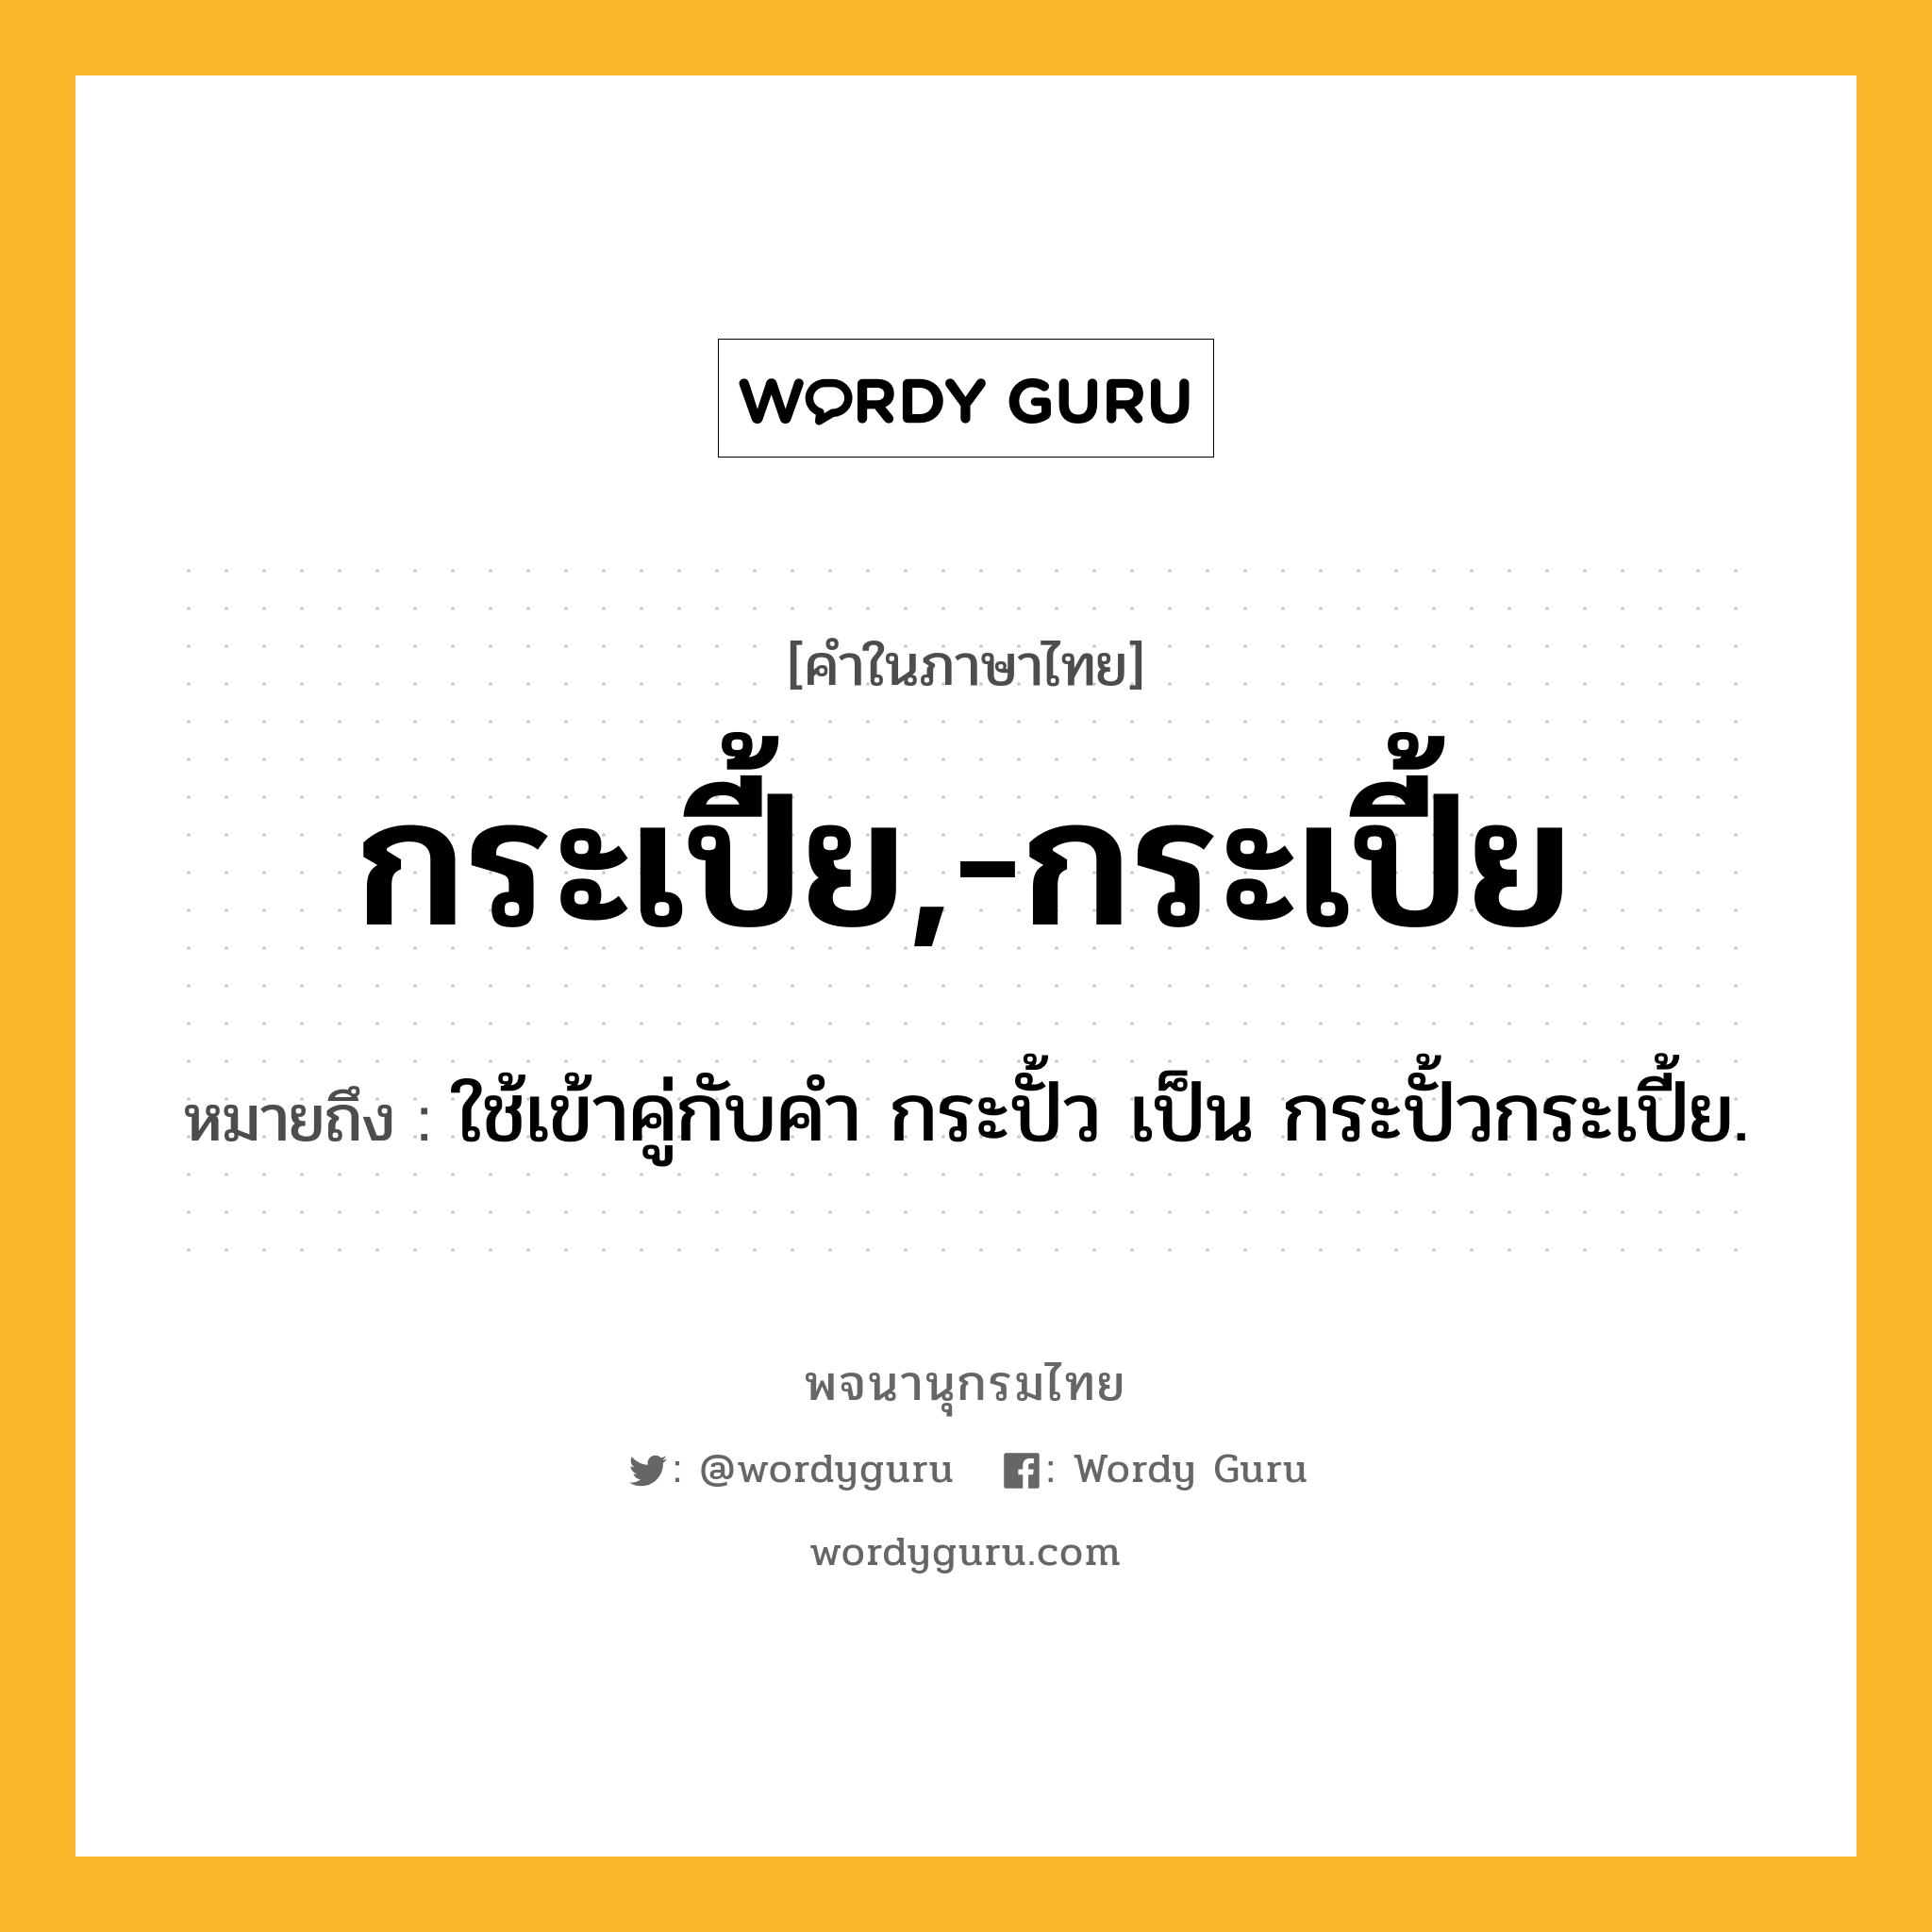 กระเปี้ย,-กระเปี้ย ความหมาย หมายถึงอะไร?, คำในภาษาไทย กระเปี้ย,-กระเปี้ย หมายถึง ใช้เข้าคู่กับคํา กระปั้ว เป็น กระปั้วกระเปี้ย.